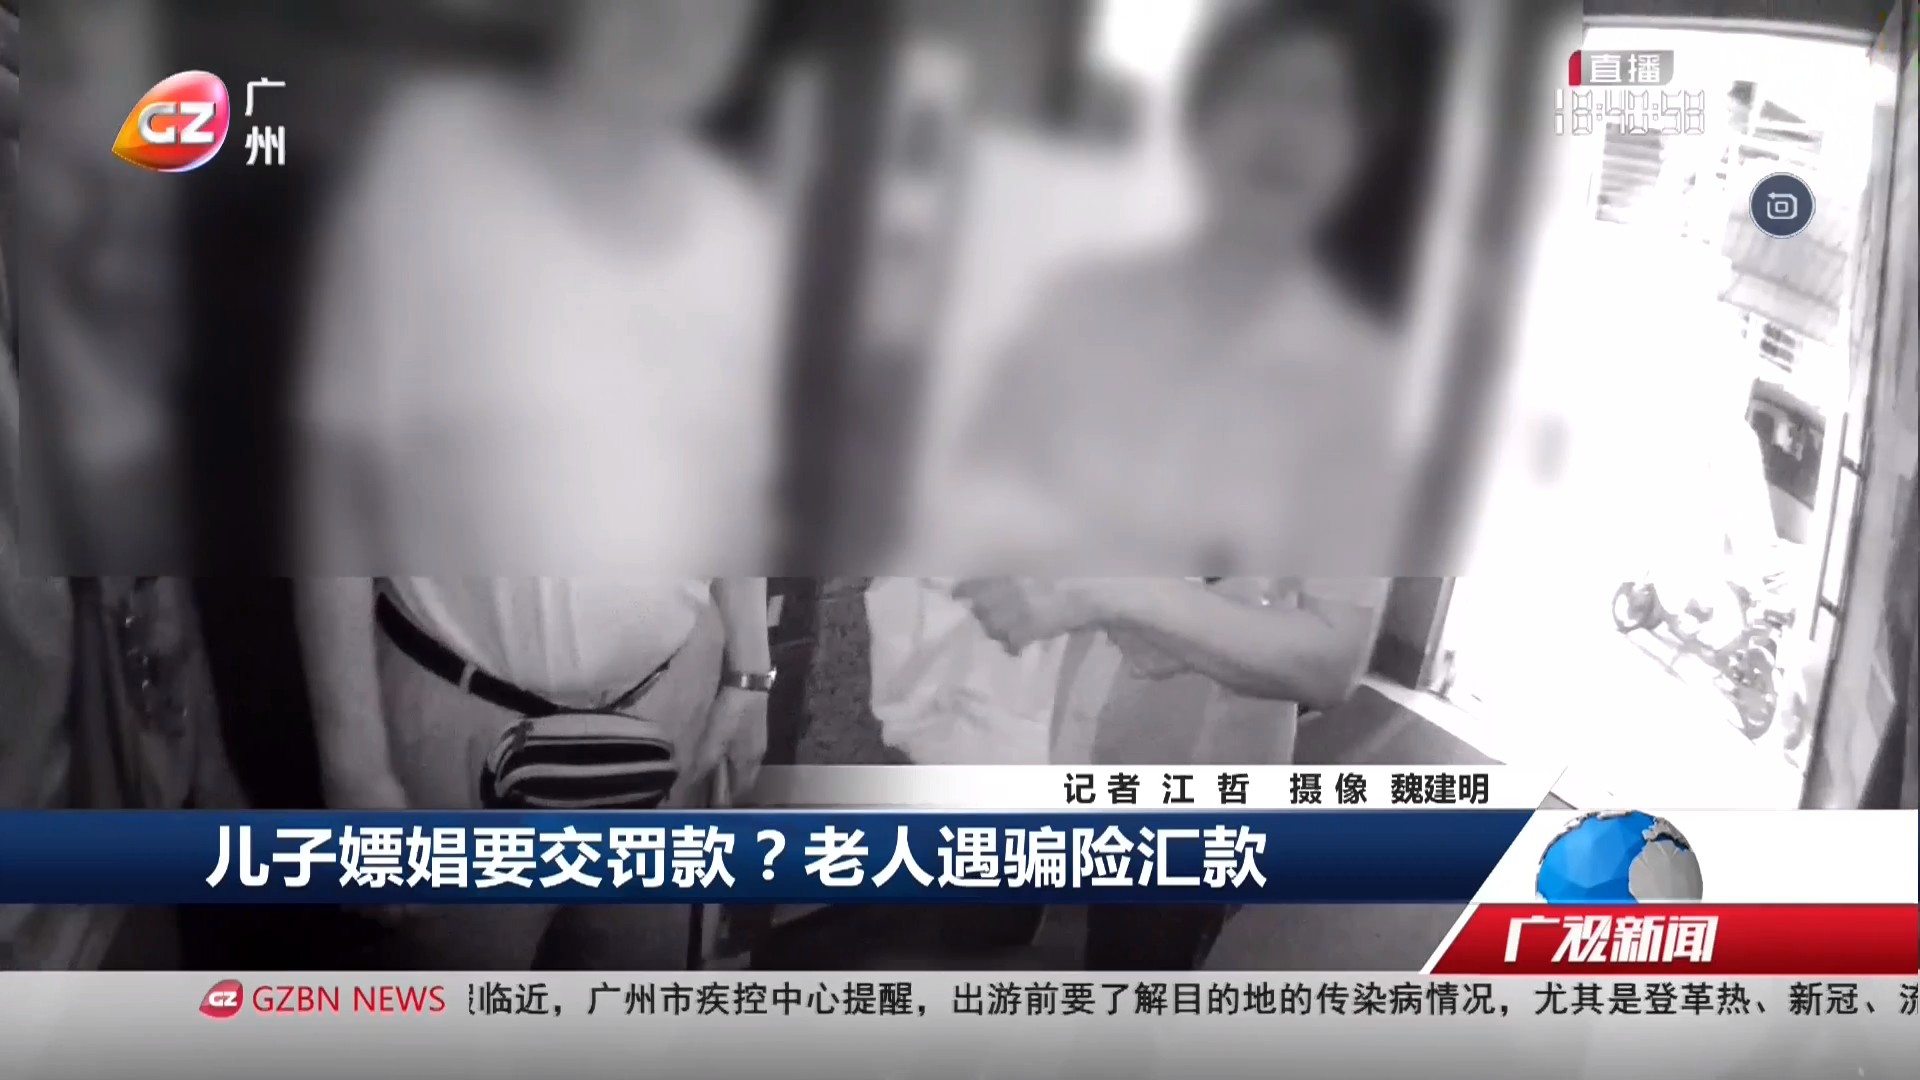 广州台综合频道 广视新闻 儿子嫖娼要交罚款？老人遇骗险汇款